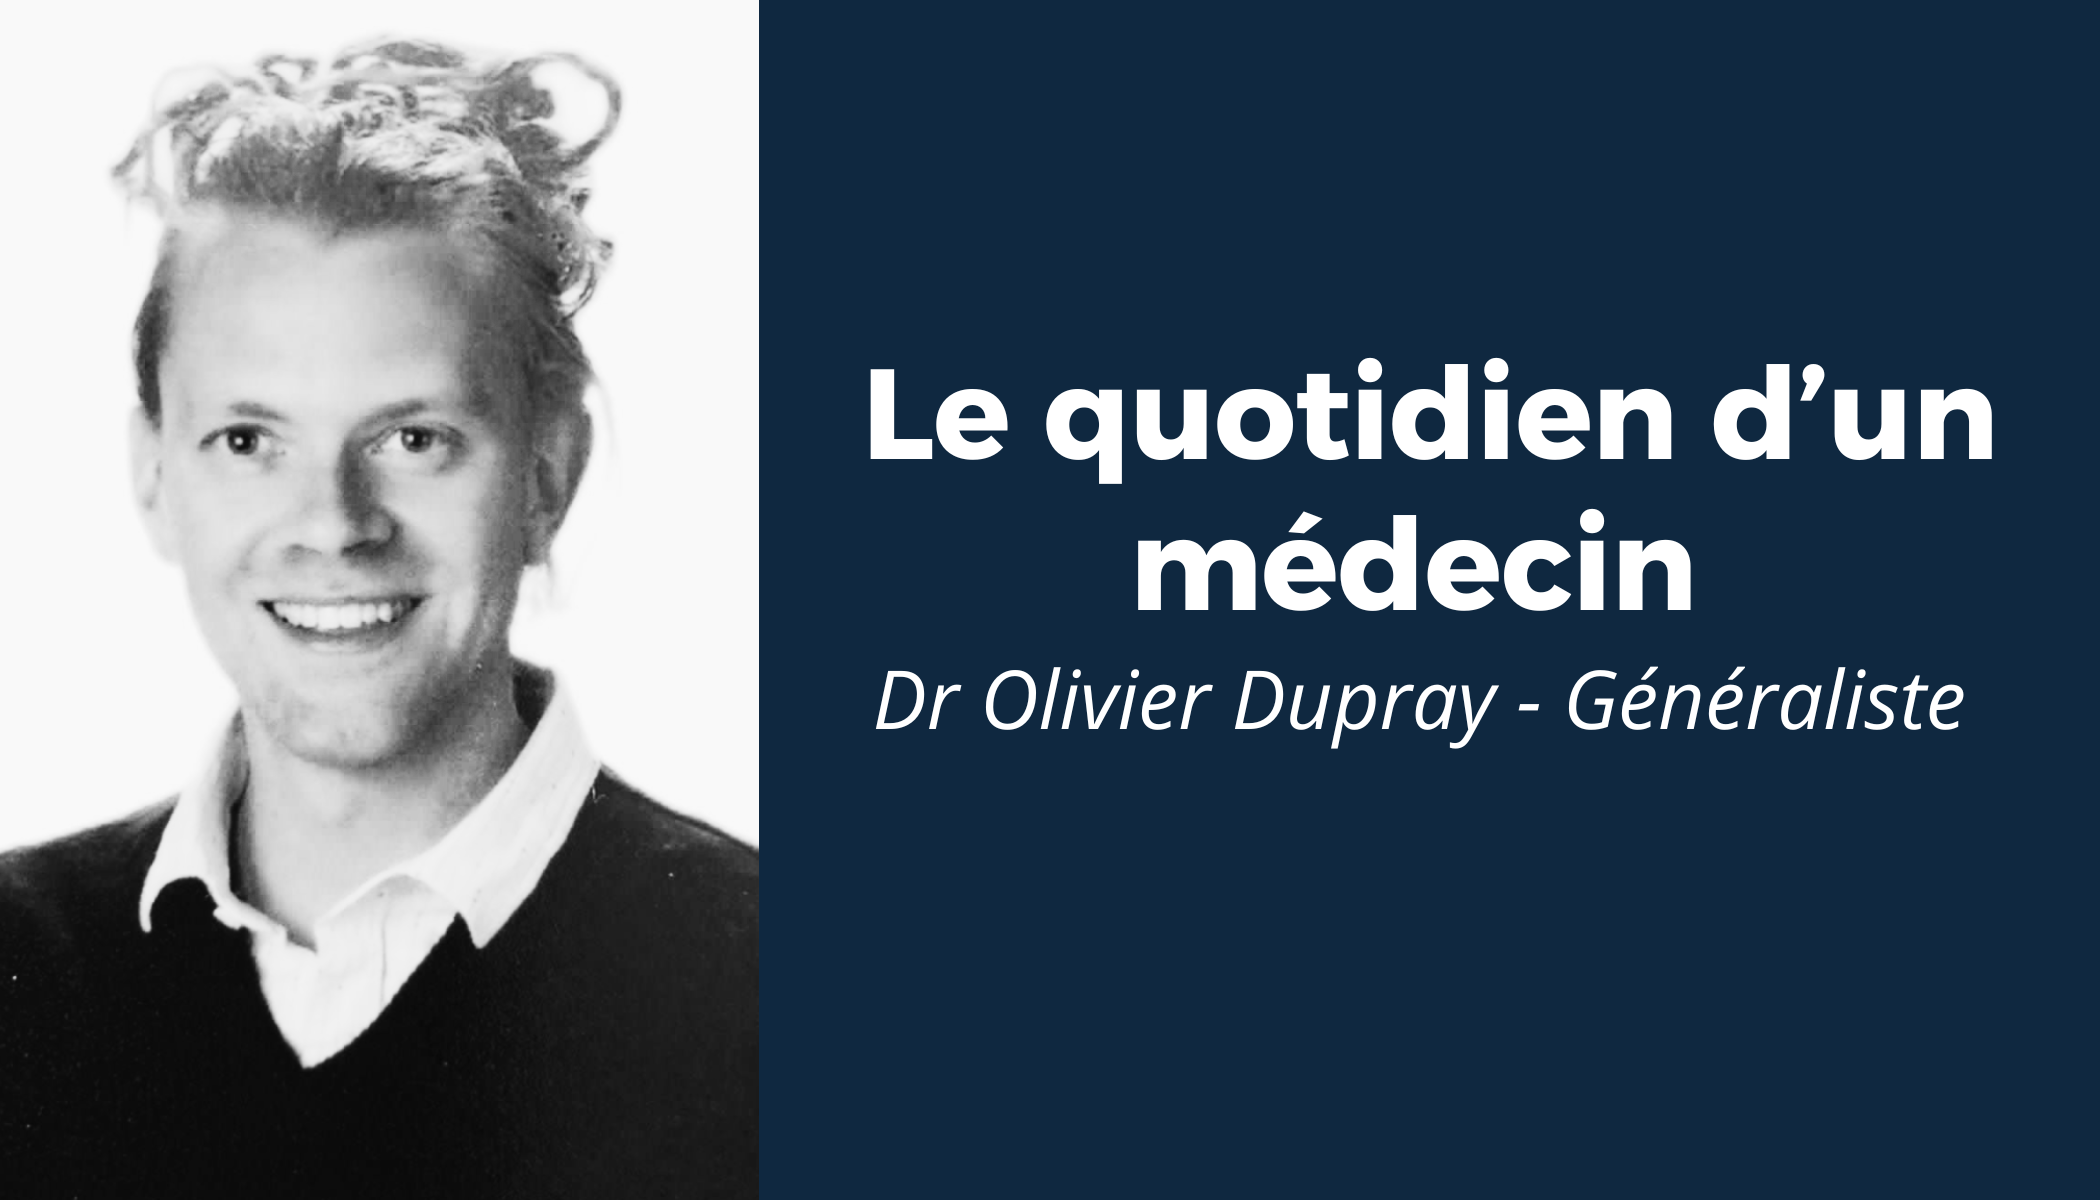 “Le quotidien d’un médecin” #2 - Rencontre avec le Dr Olivier Dupray 